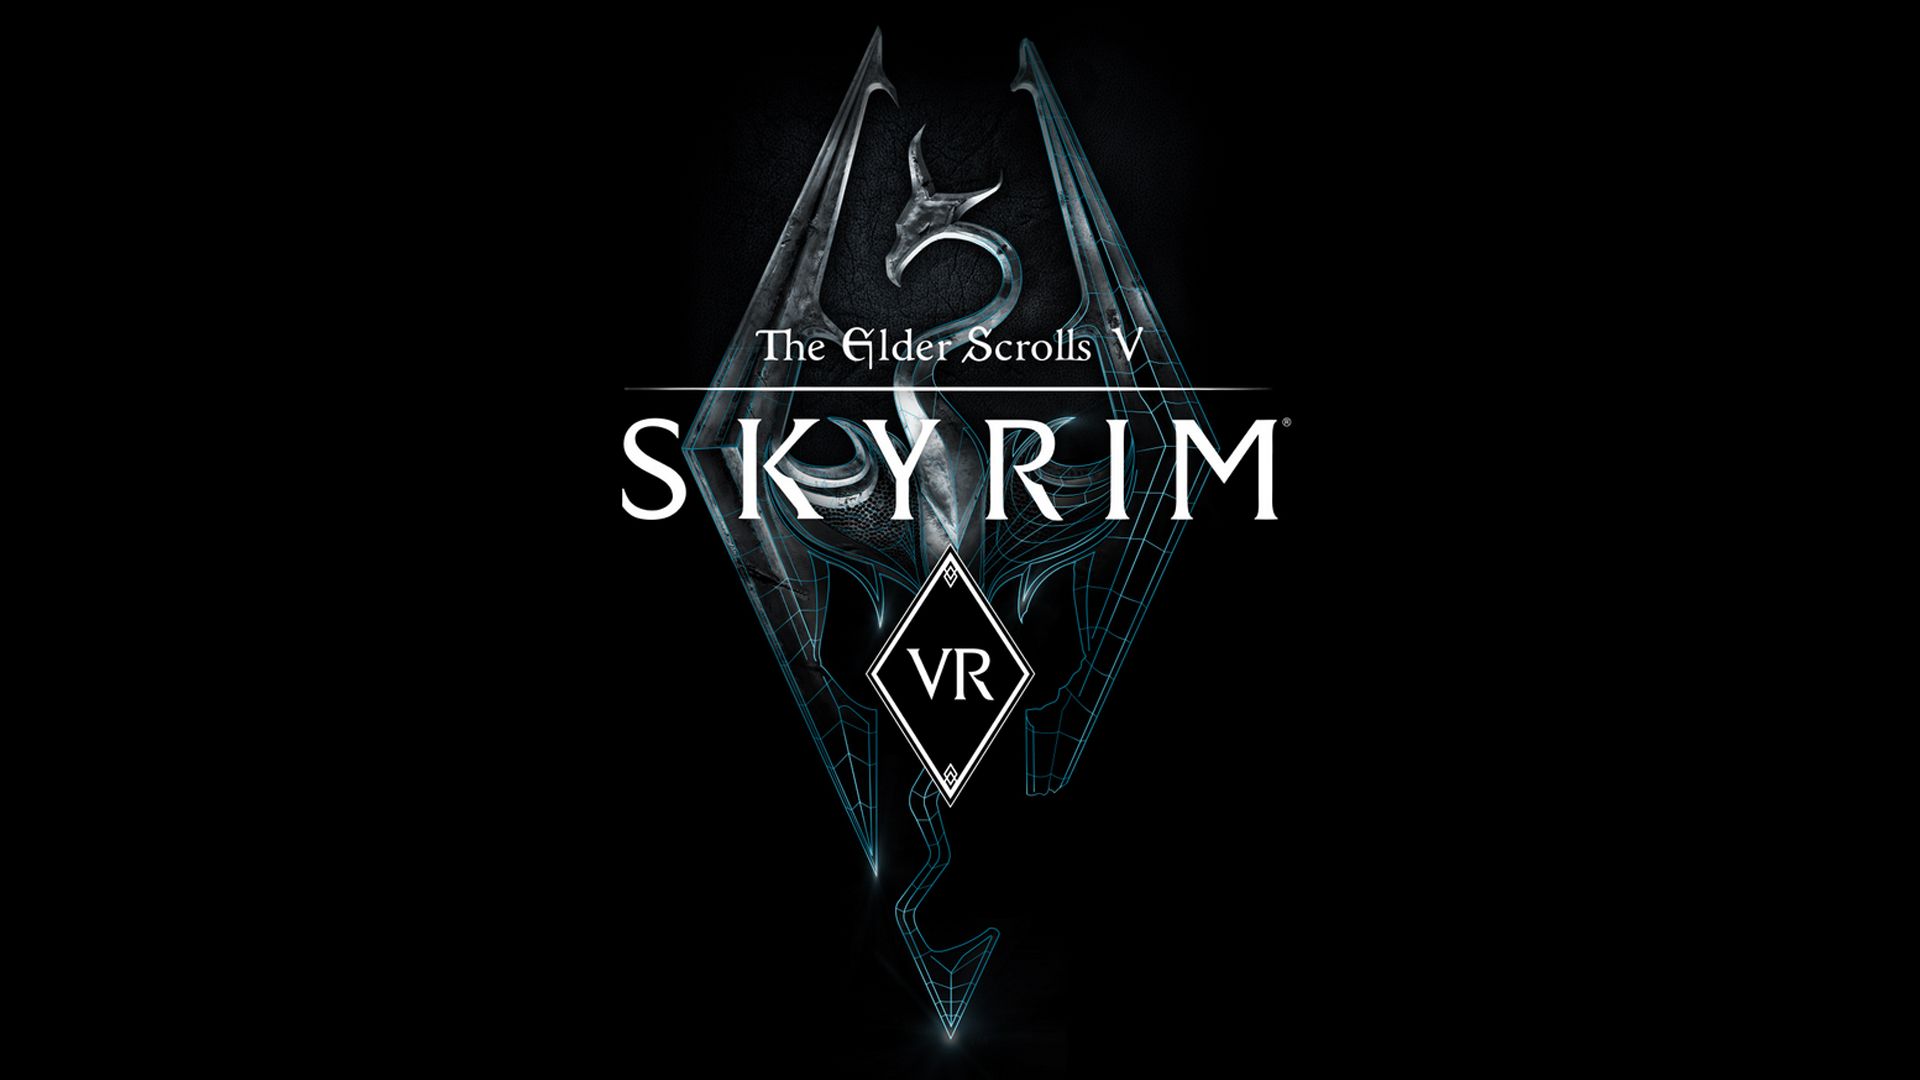 ゲームを見直し、Elder Scrolls V:Skyrim VR